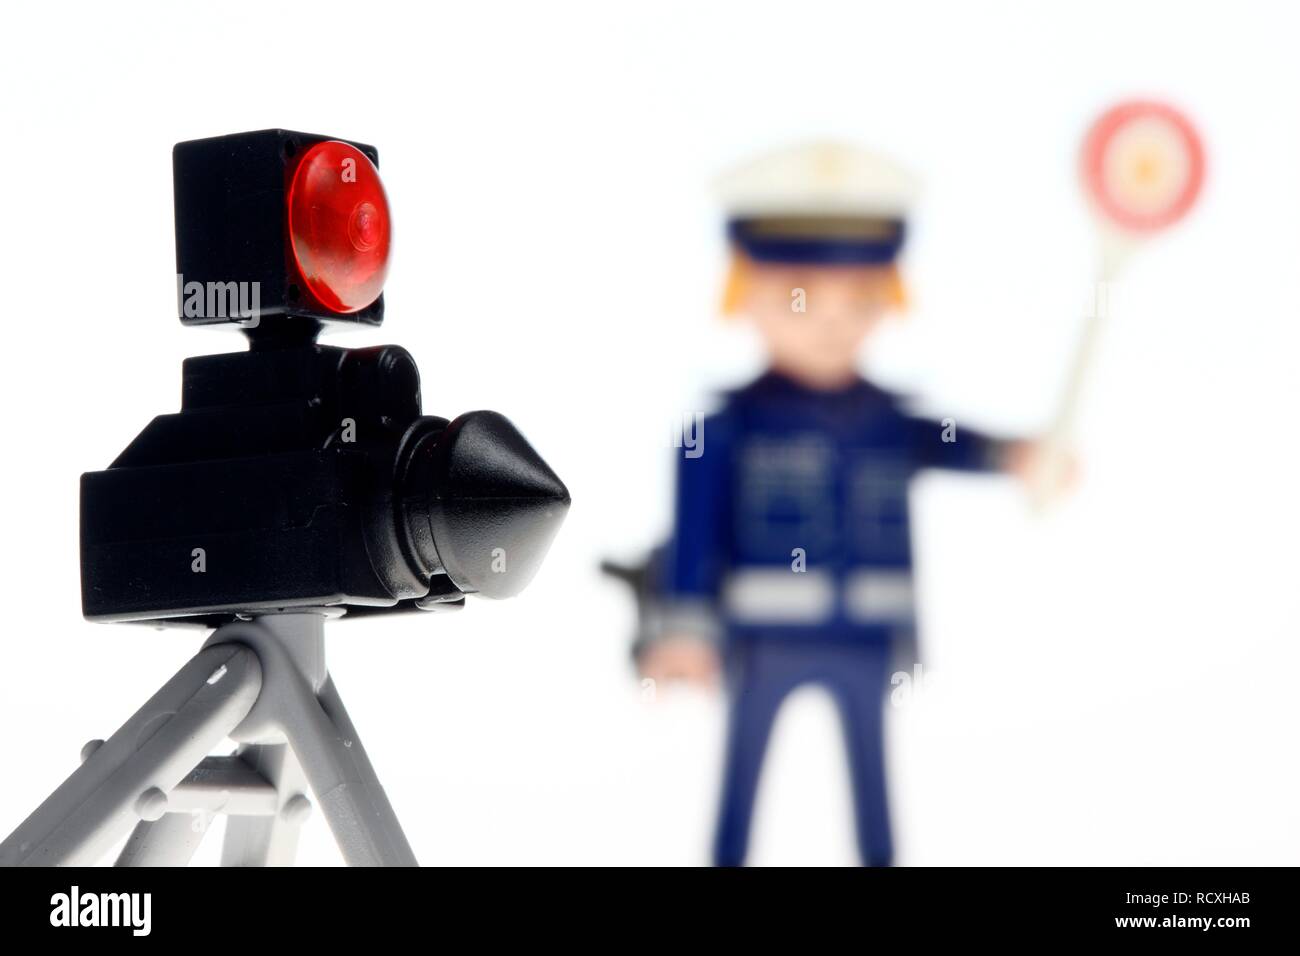 Playmobil Figur, ein Polizist trägt eine blaue Uniform, STOP-Schild und eine Polizei radar Gerät die Geschwindigkeit der Fahrzeuge zu messen. Stockfoto